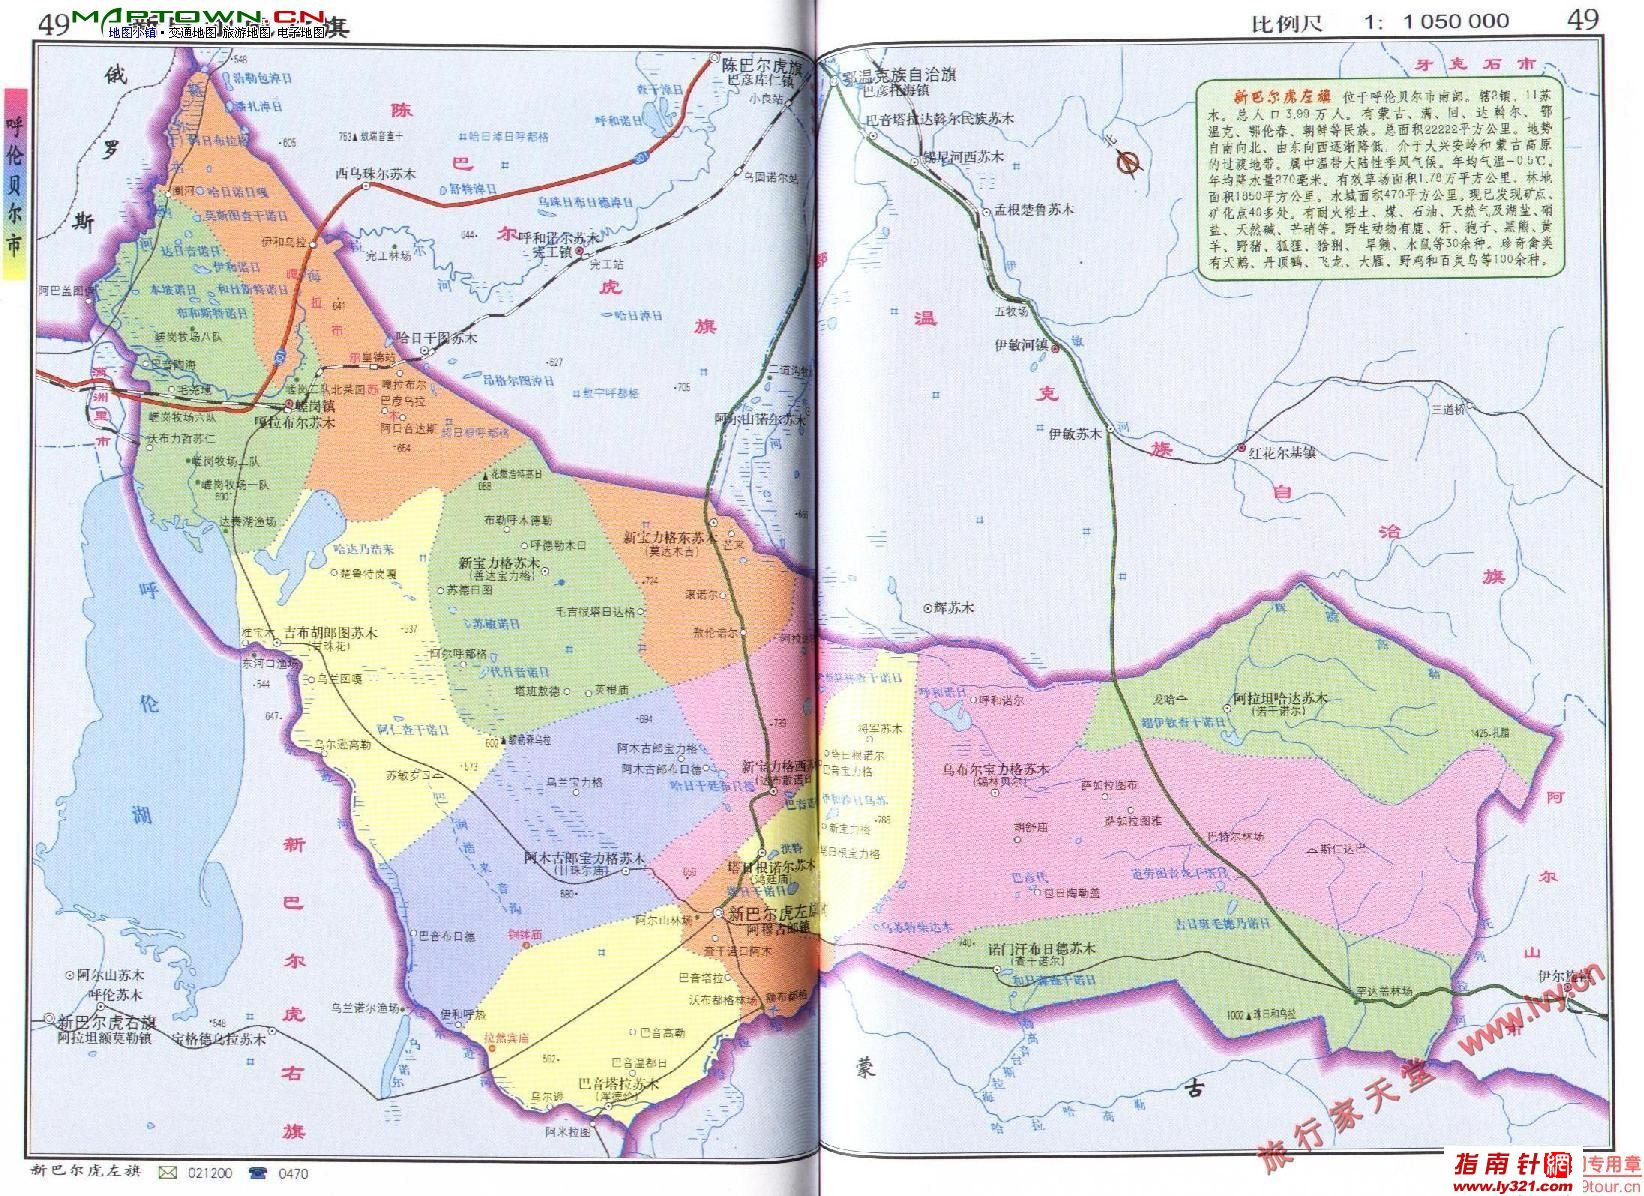 内蒙古呼伦贝尔鄂伦春自治旗区划交通地图_呼伦贝尔地图库